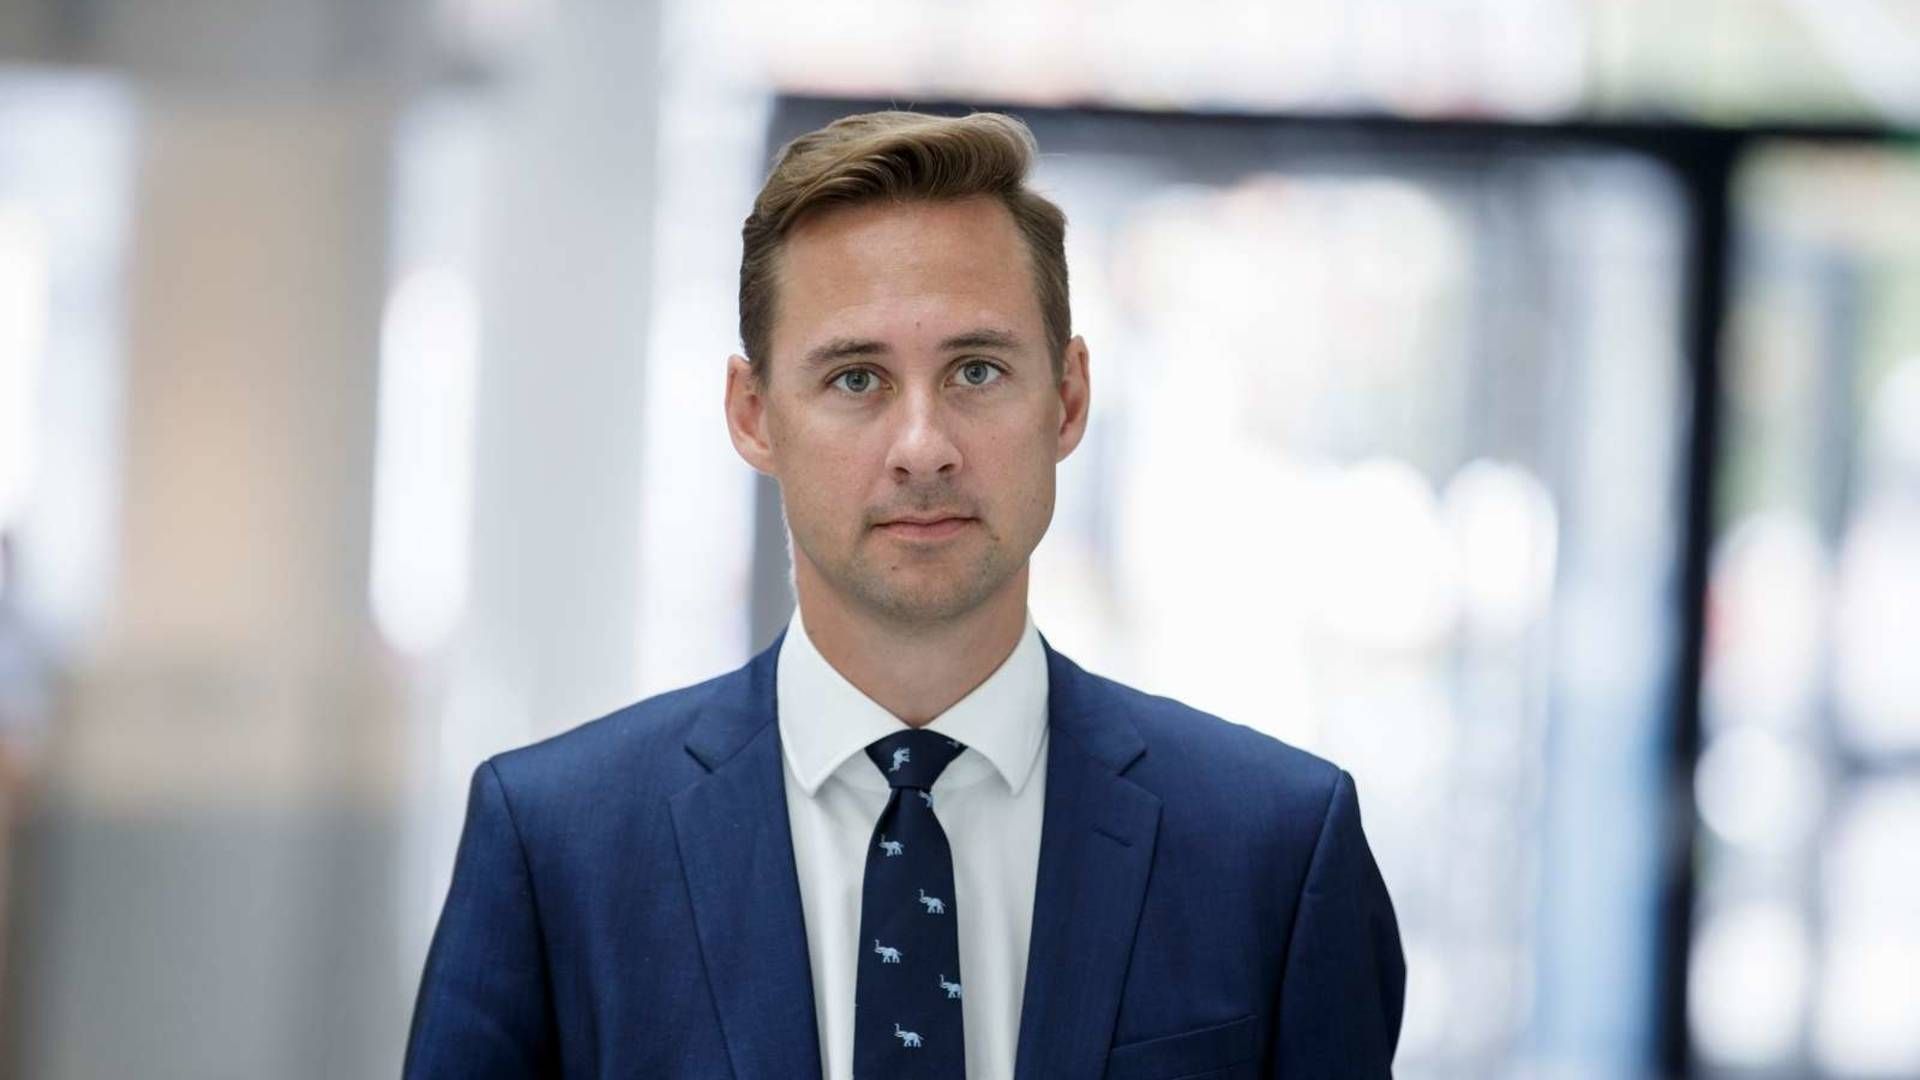 Christian Hannibal, digitaliseringspolitisk chef, Dansk Industri. | Foto: PR/Dansk Industri